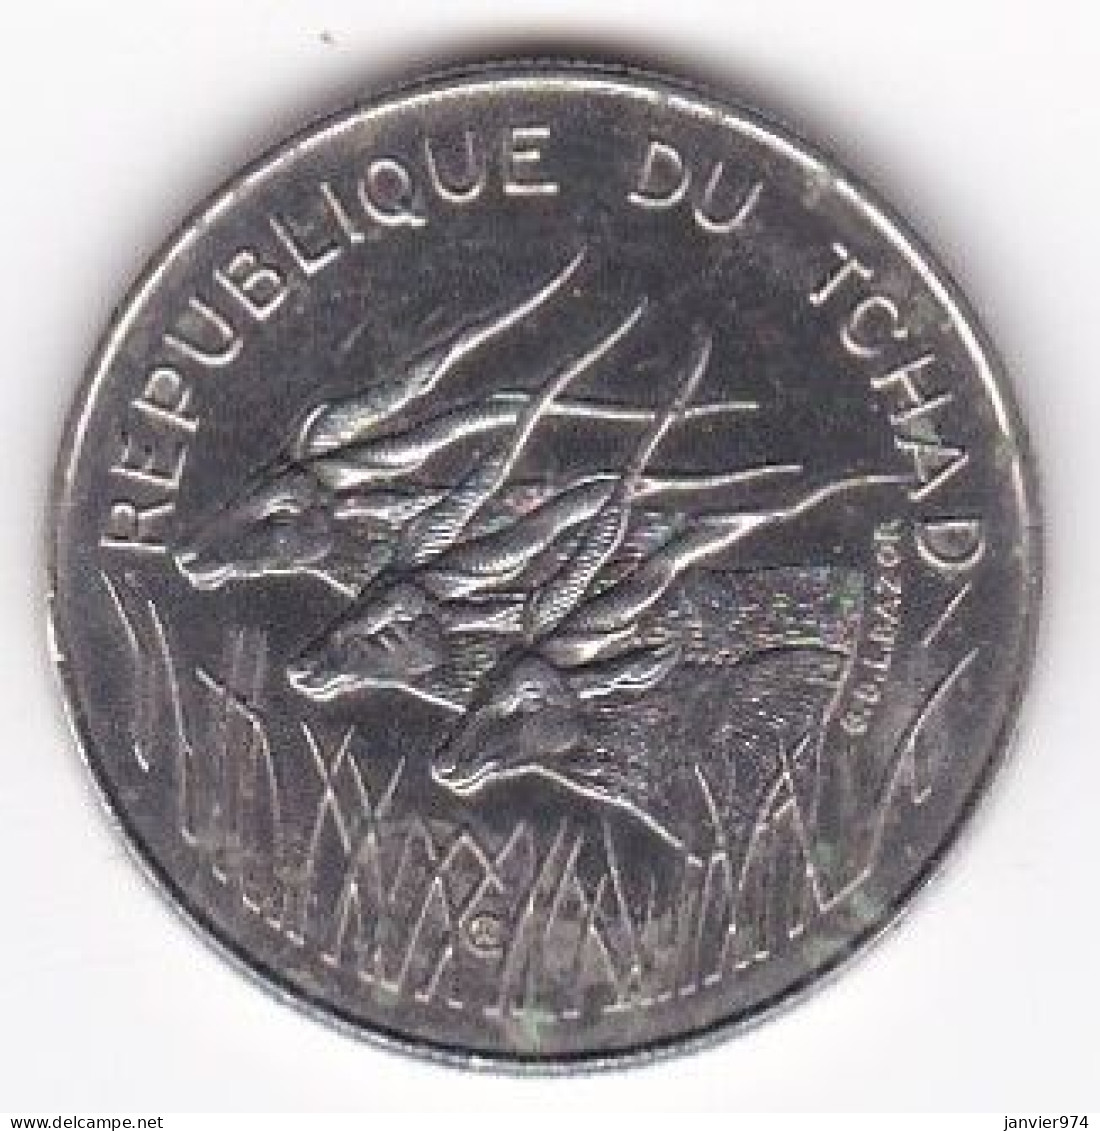 République Du Tchad 100 Francs 1971, En Nickel , KM# 2 - Chad